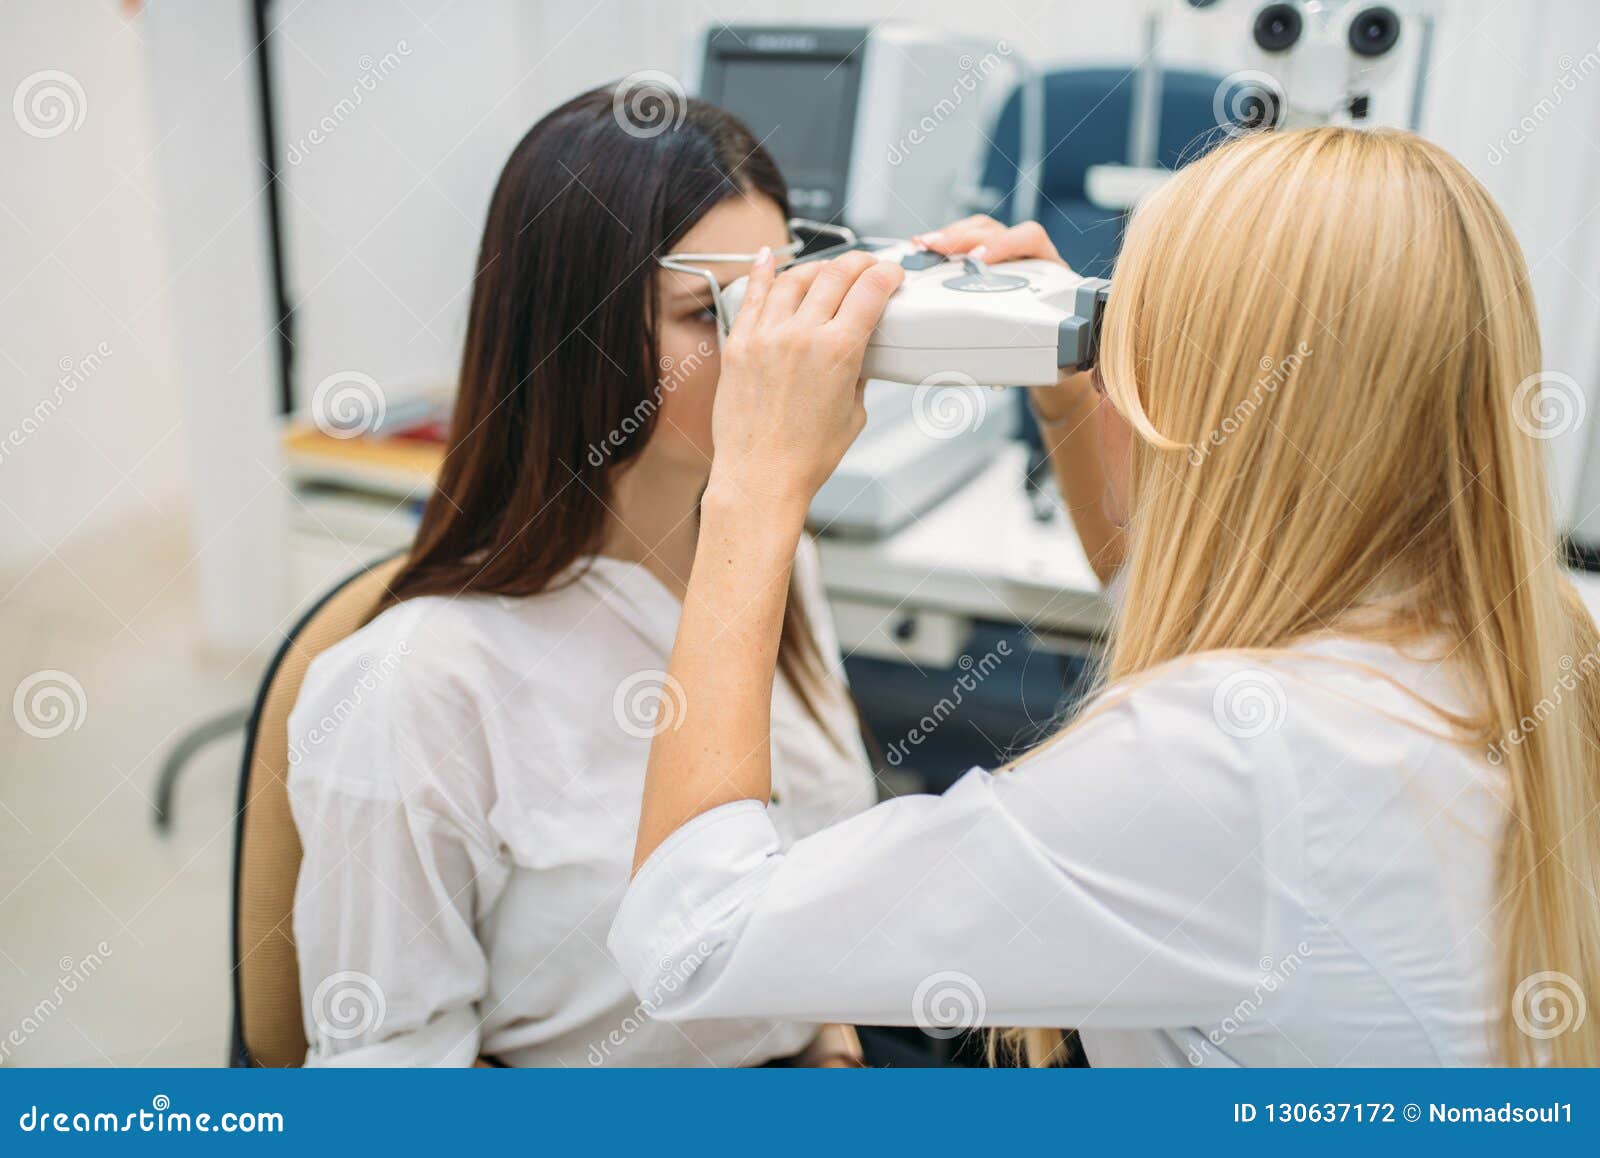 做与光学phoropter的俏丽的年轻女人眼力测量在眼科学诊所 库存照片 - 图片 包括有 执行, 镜片: 134233870